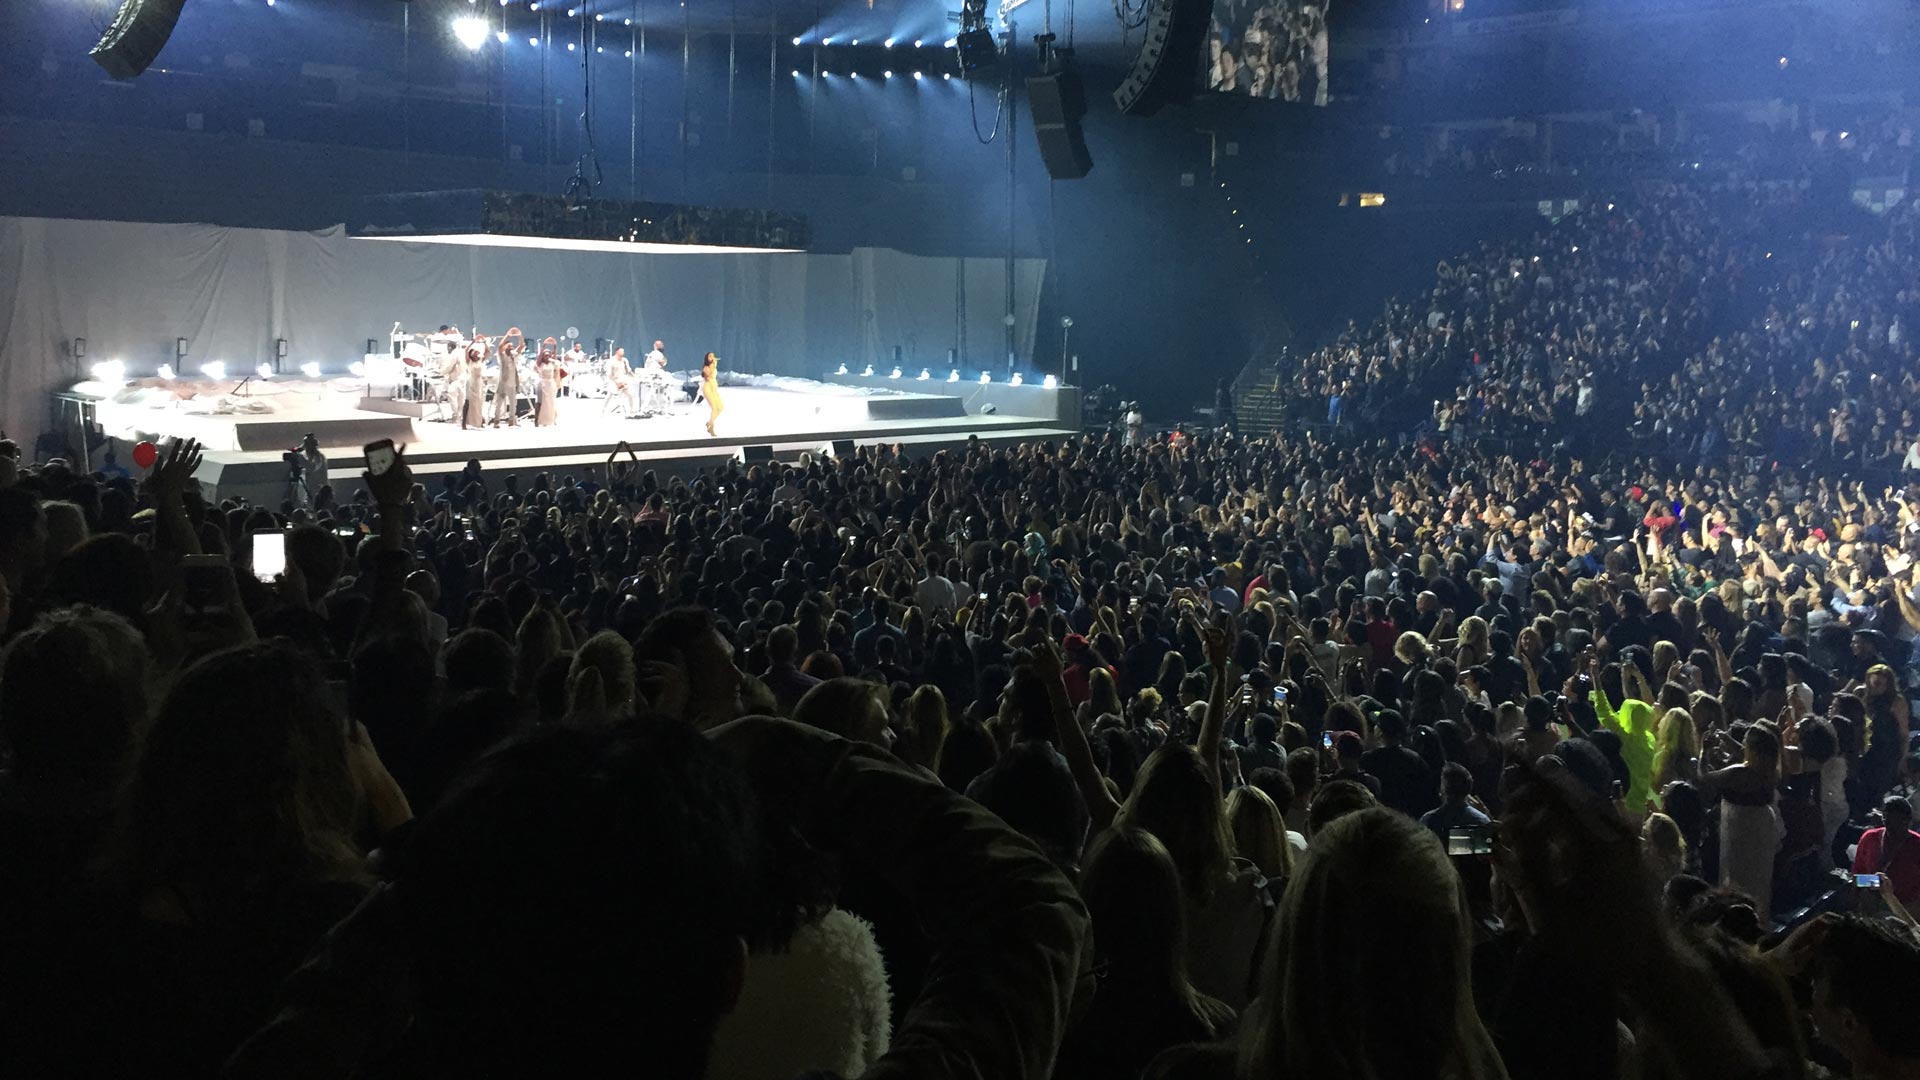 Rihanna at the Oracle Arena, May 7, 2016.